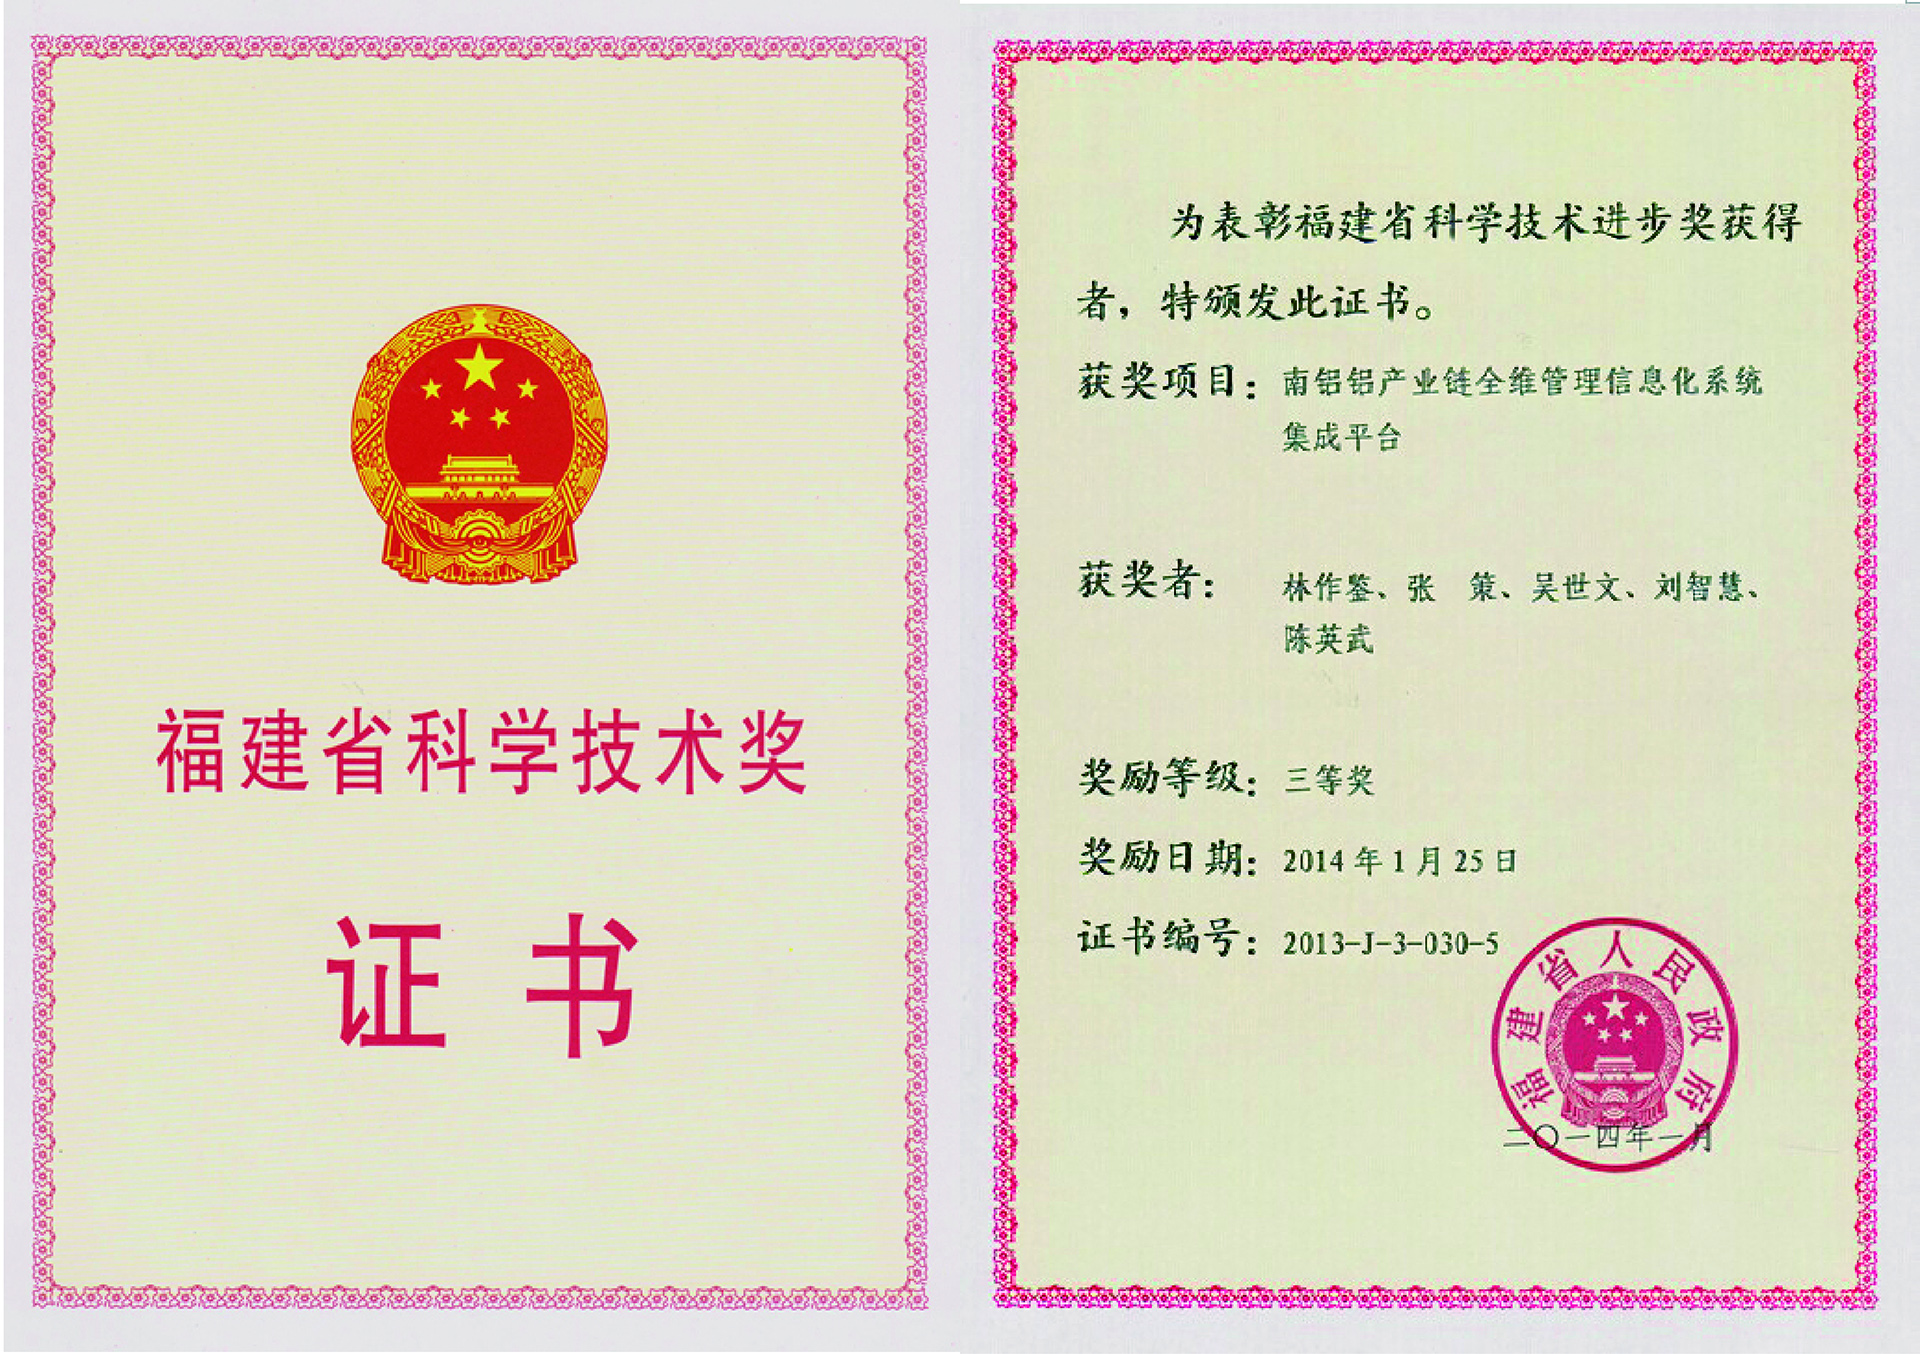 2013年获福建省科学技术奖三等奖-1.jpg